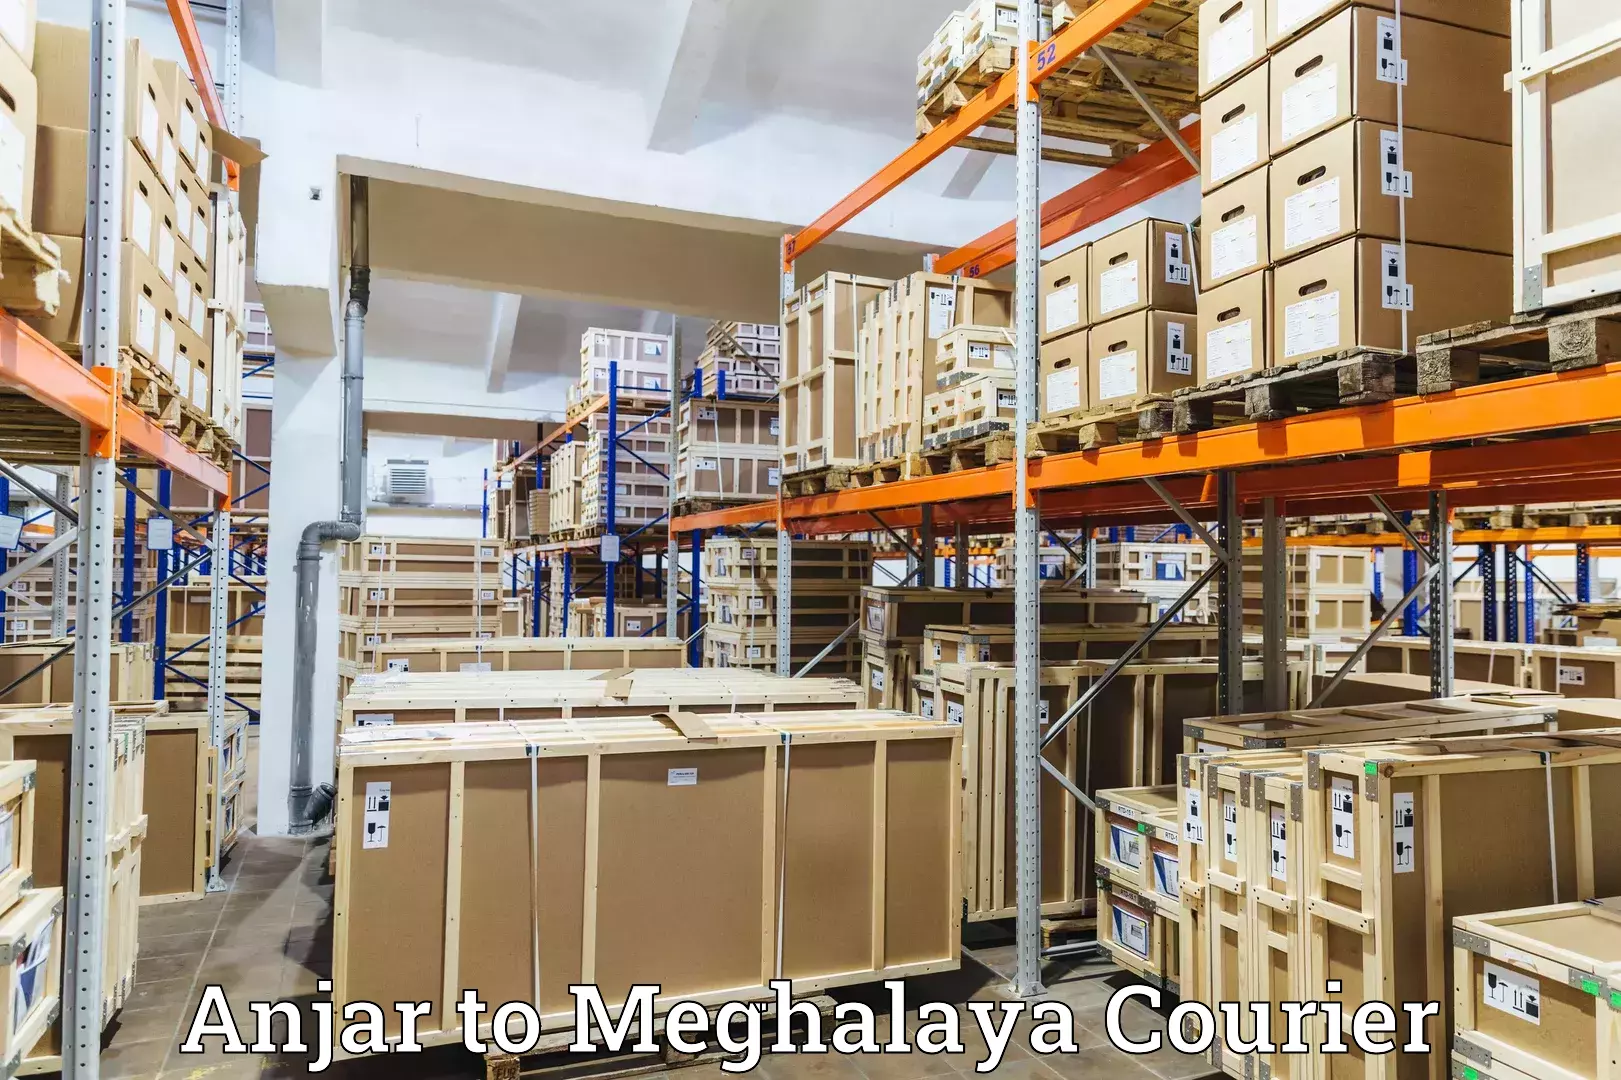 Courier service partnerships Anjar to Meghalaya